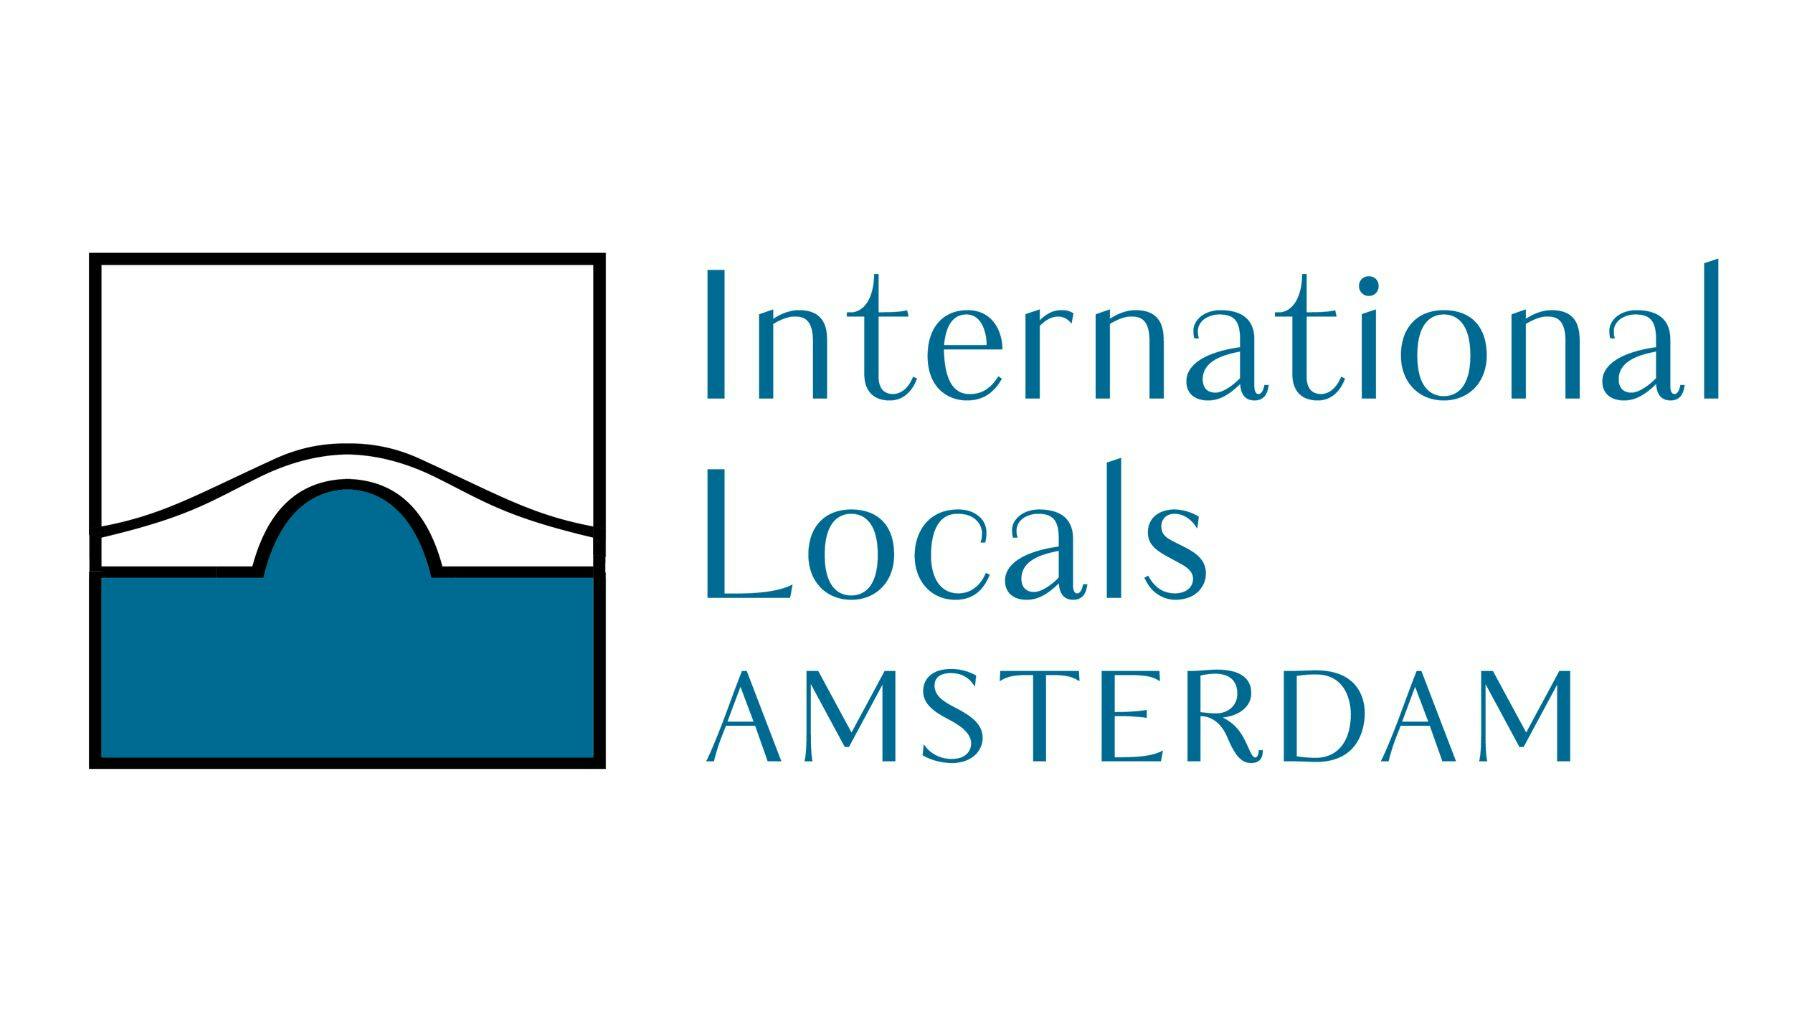 International Locals Amsterdam